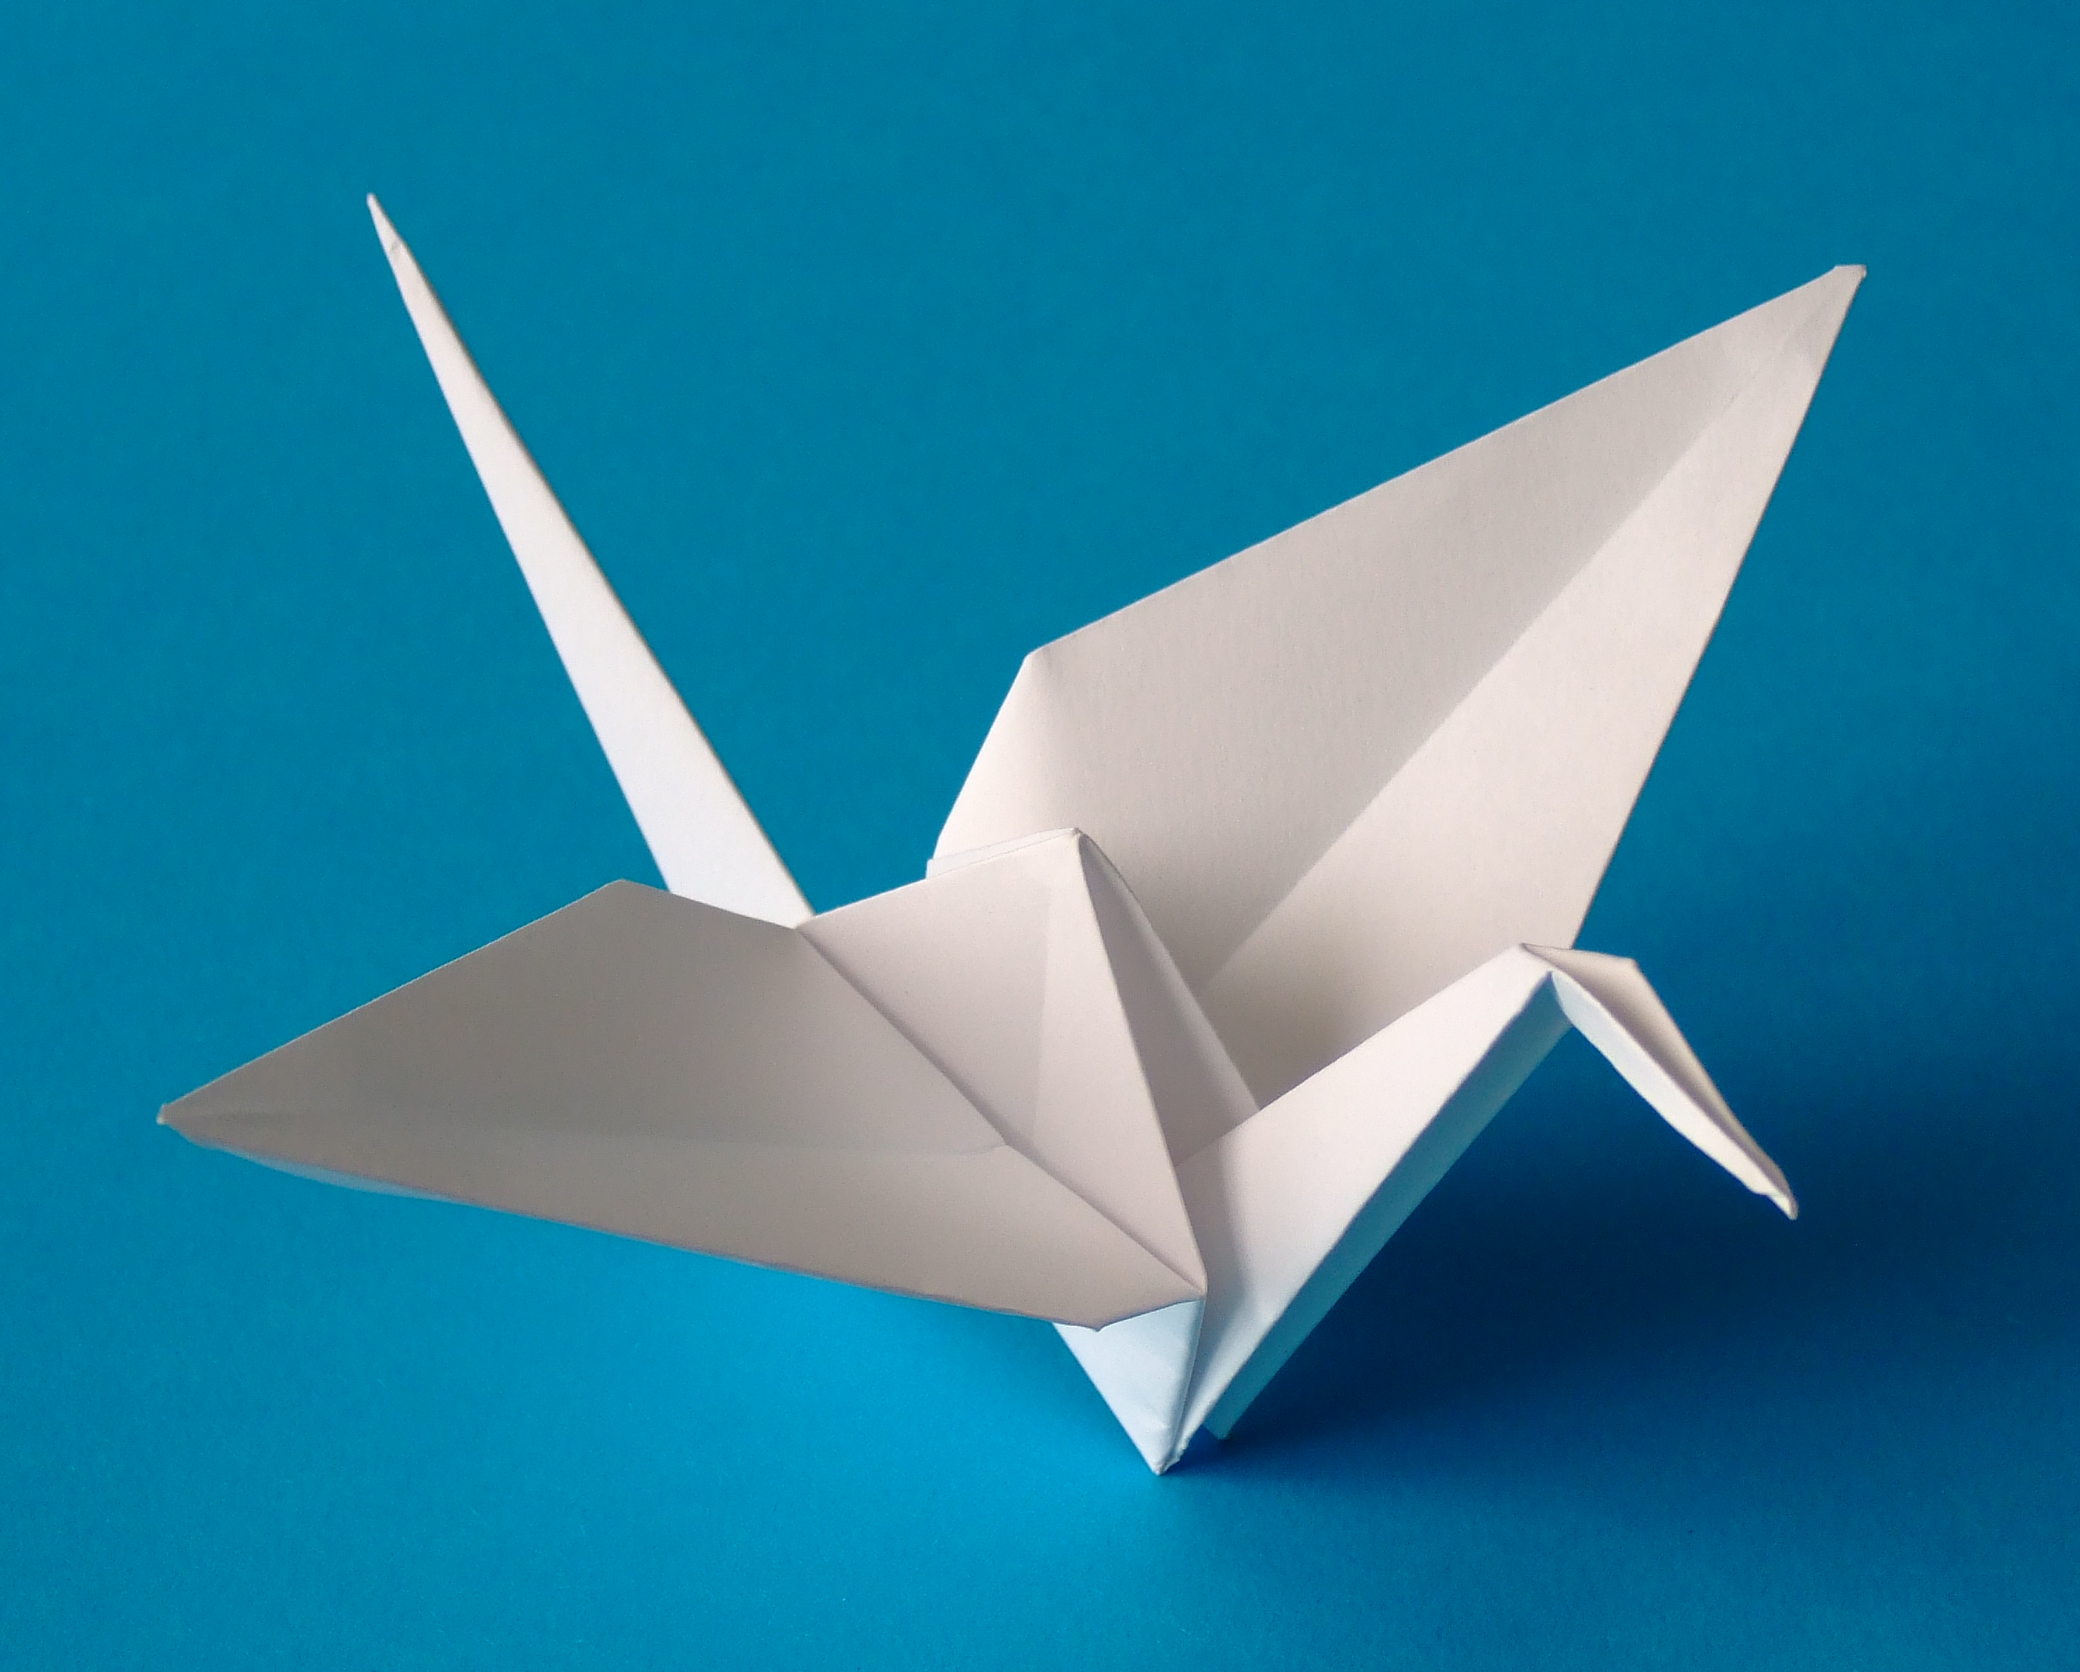 japanese origami